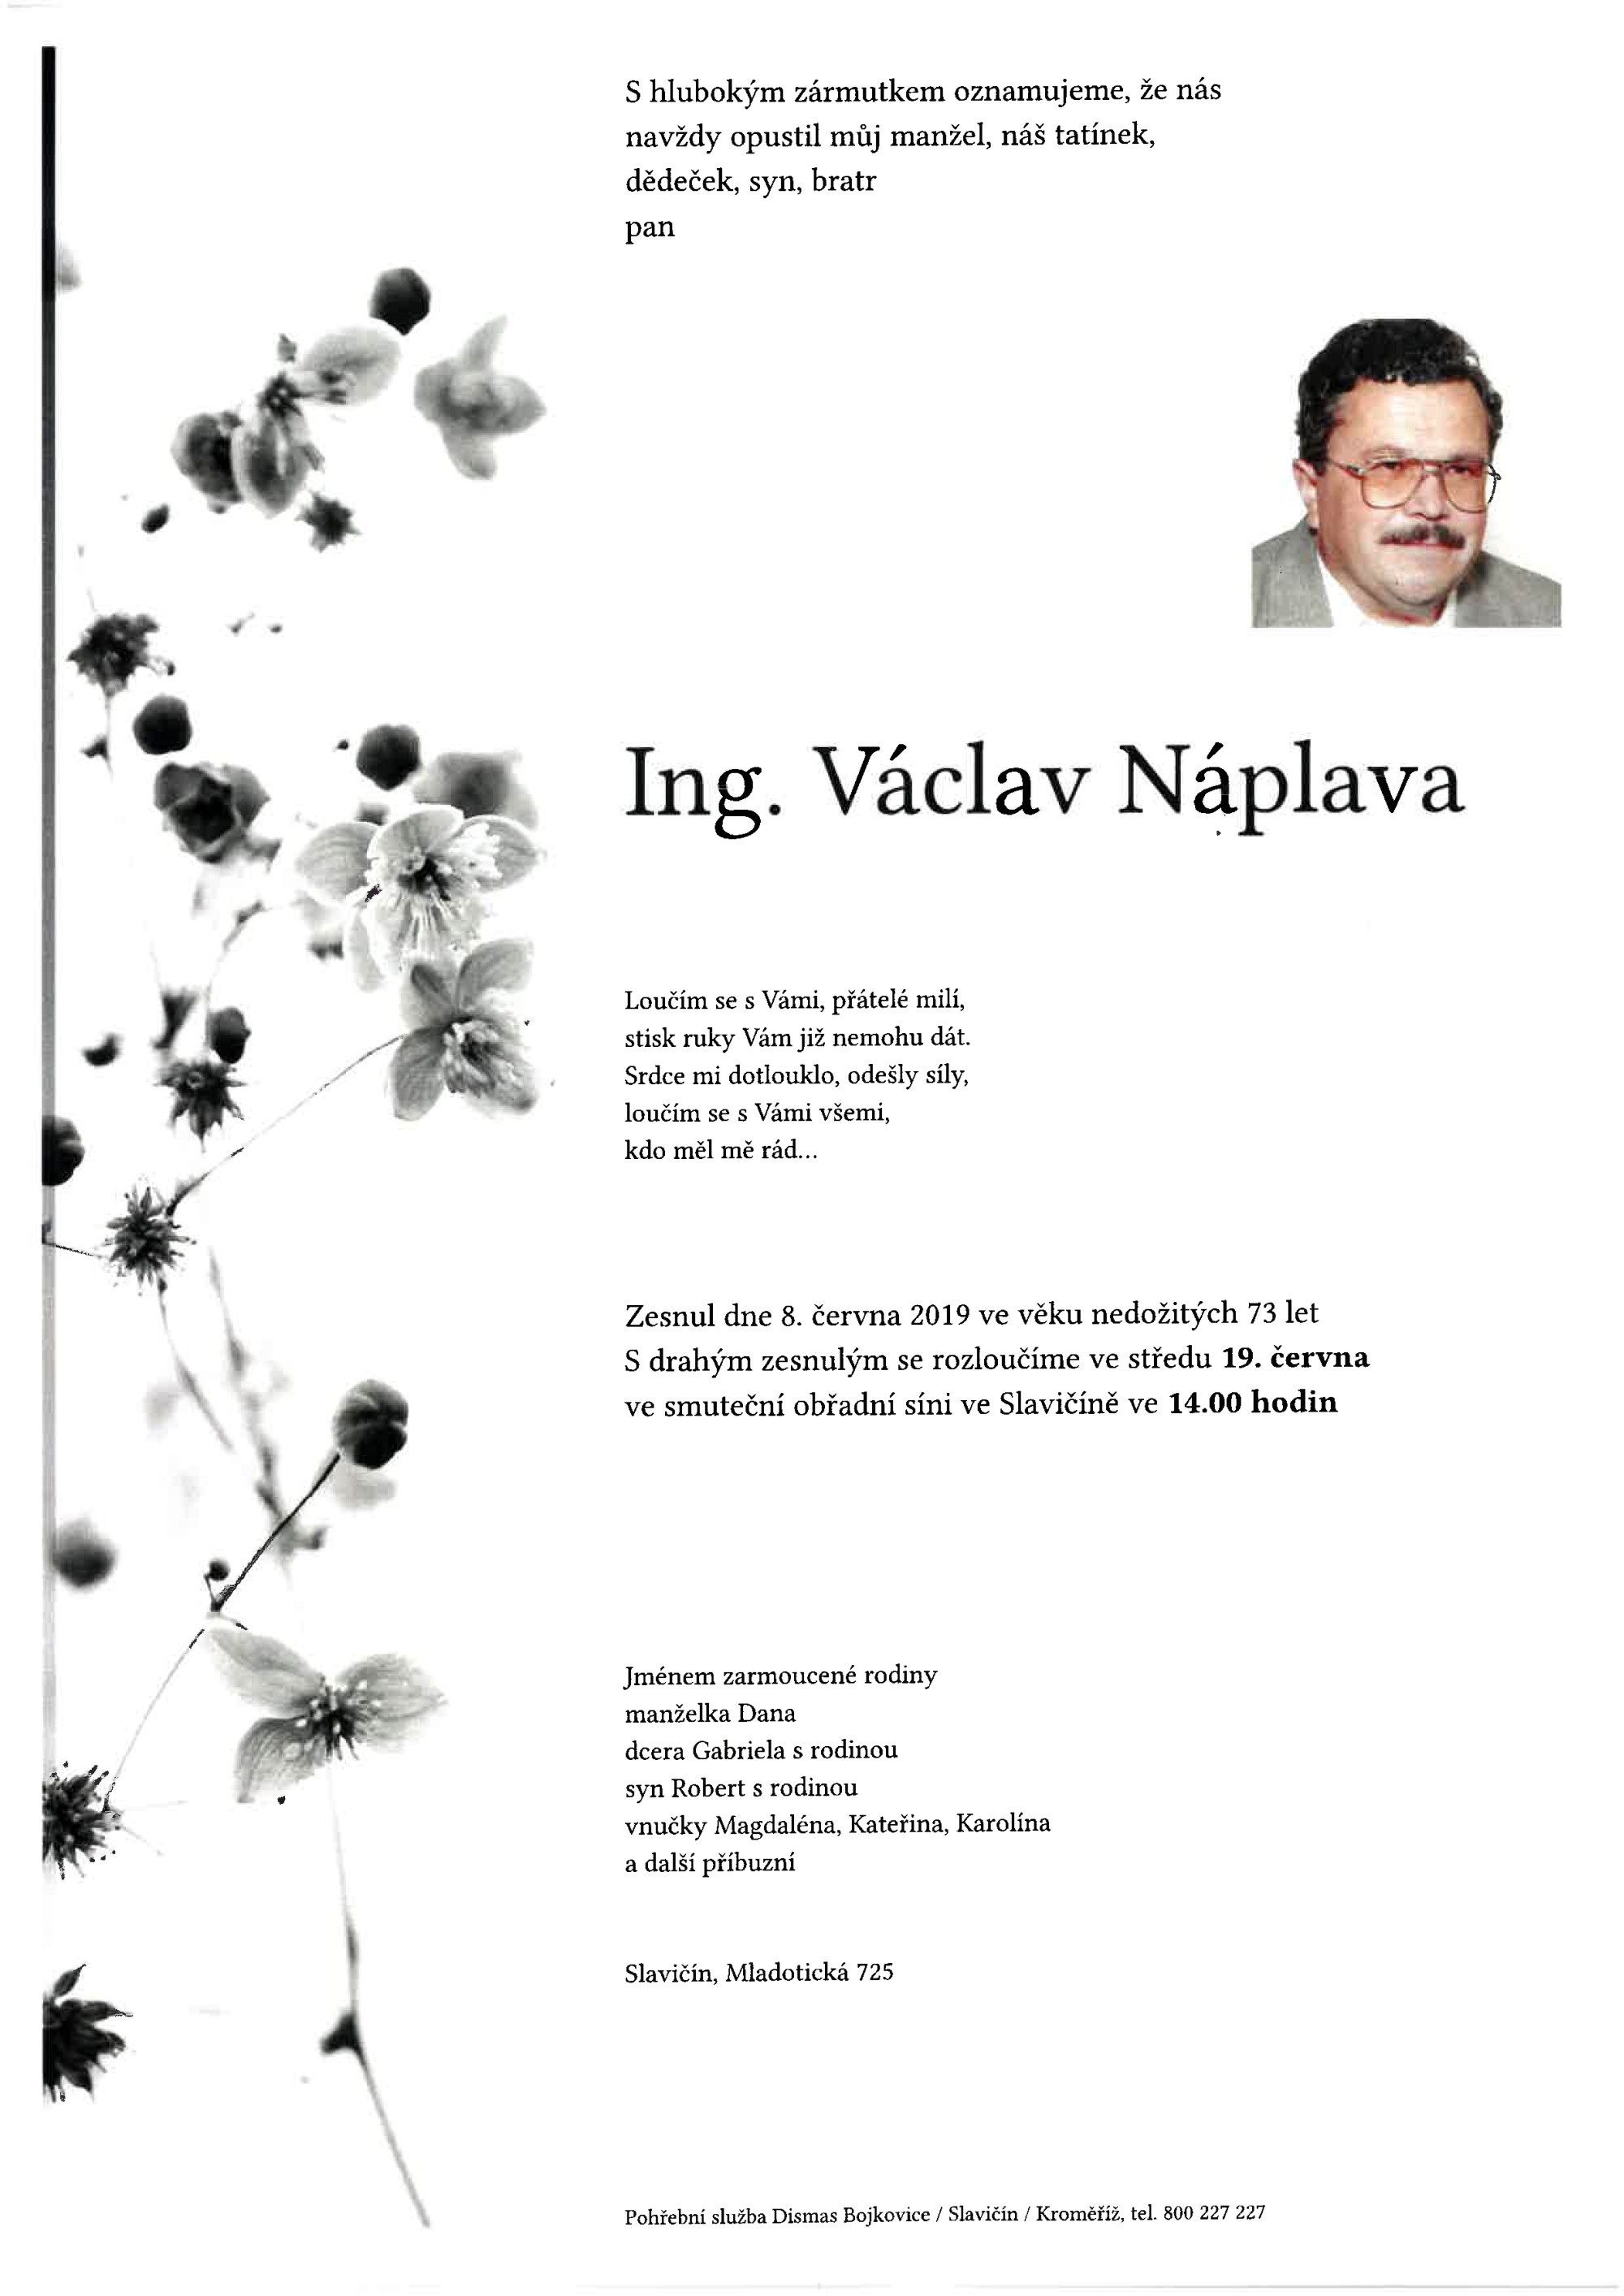 Ing. Václav Náplava